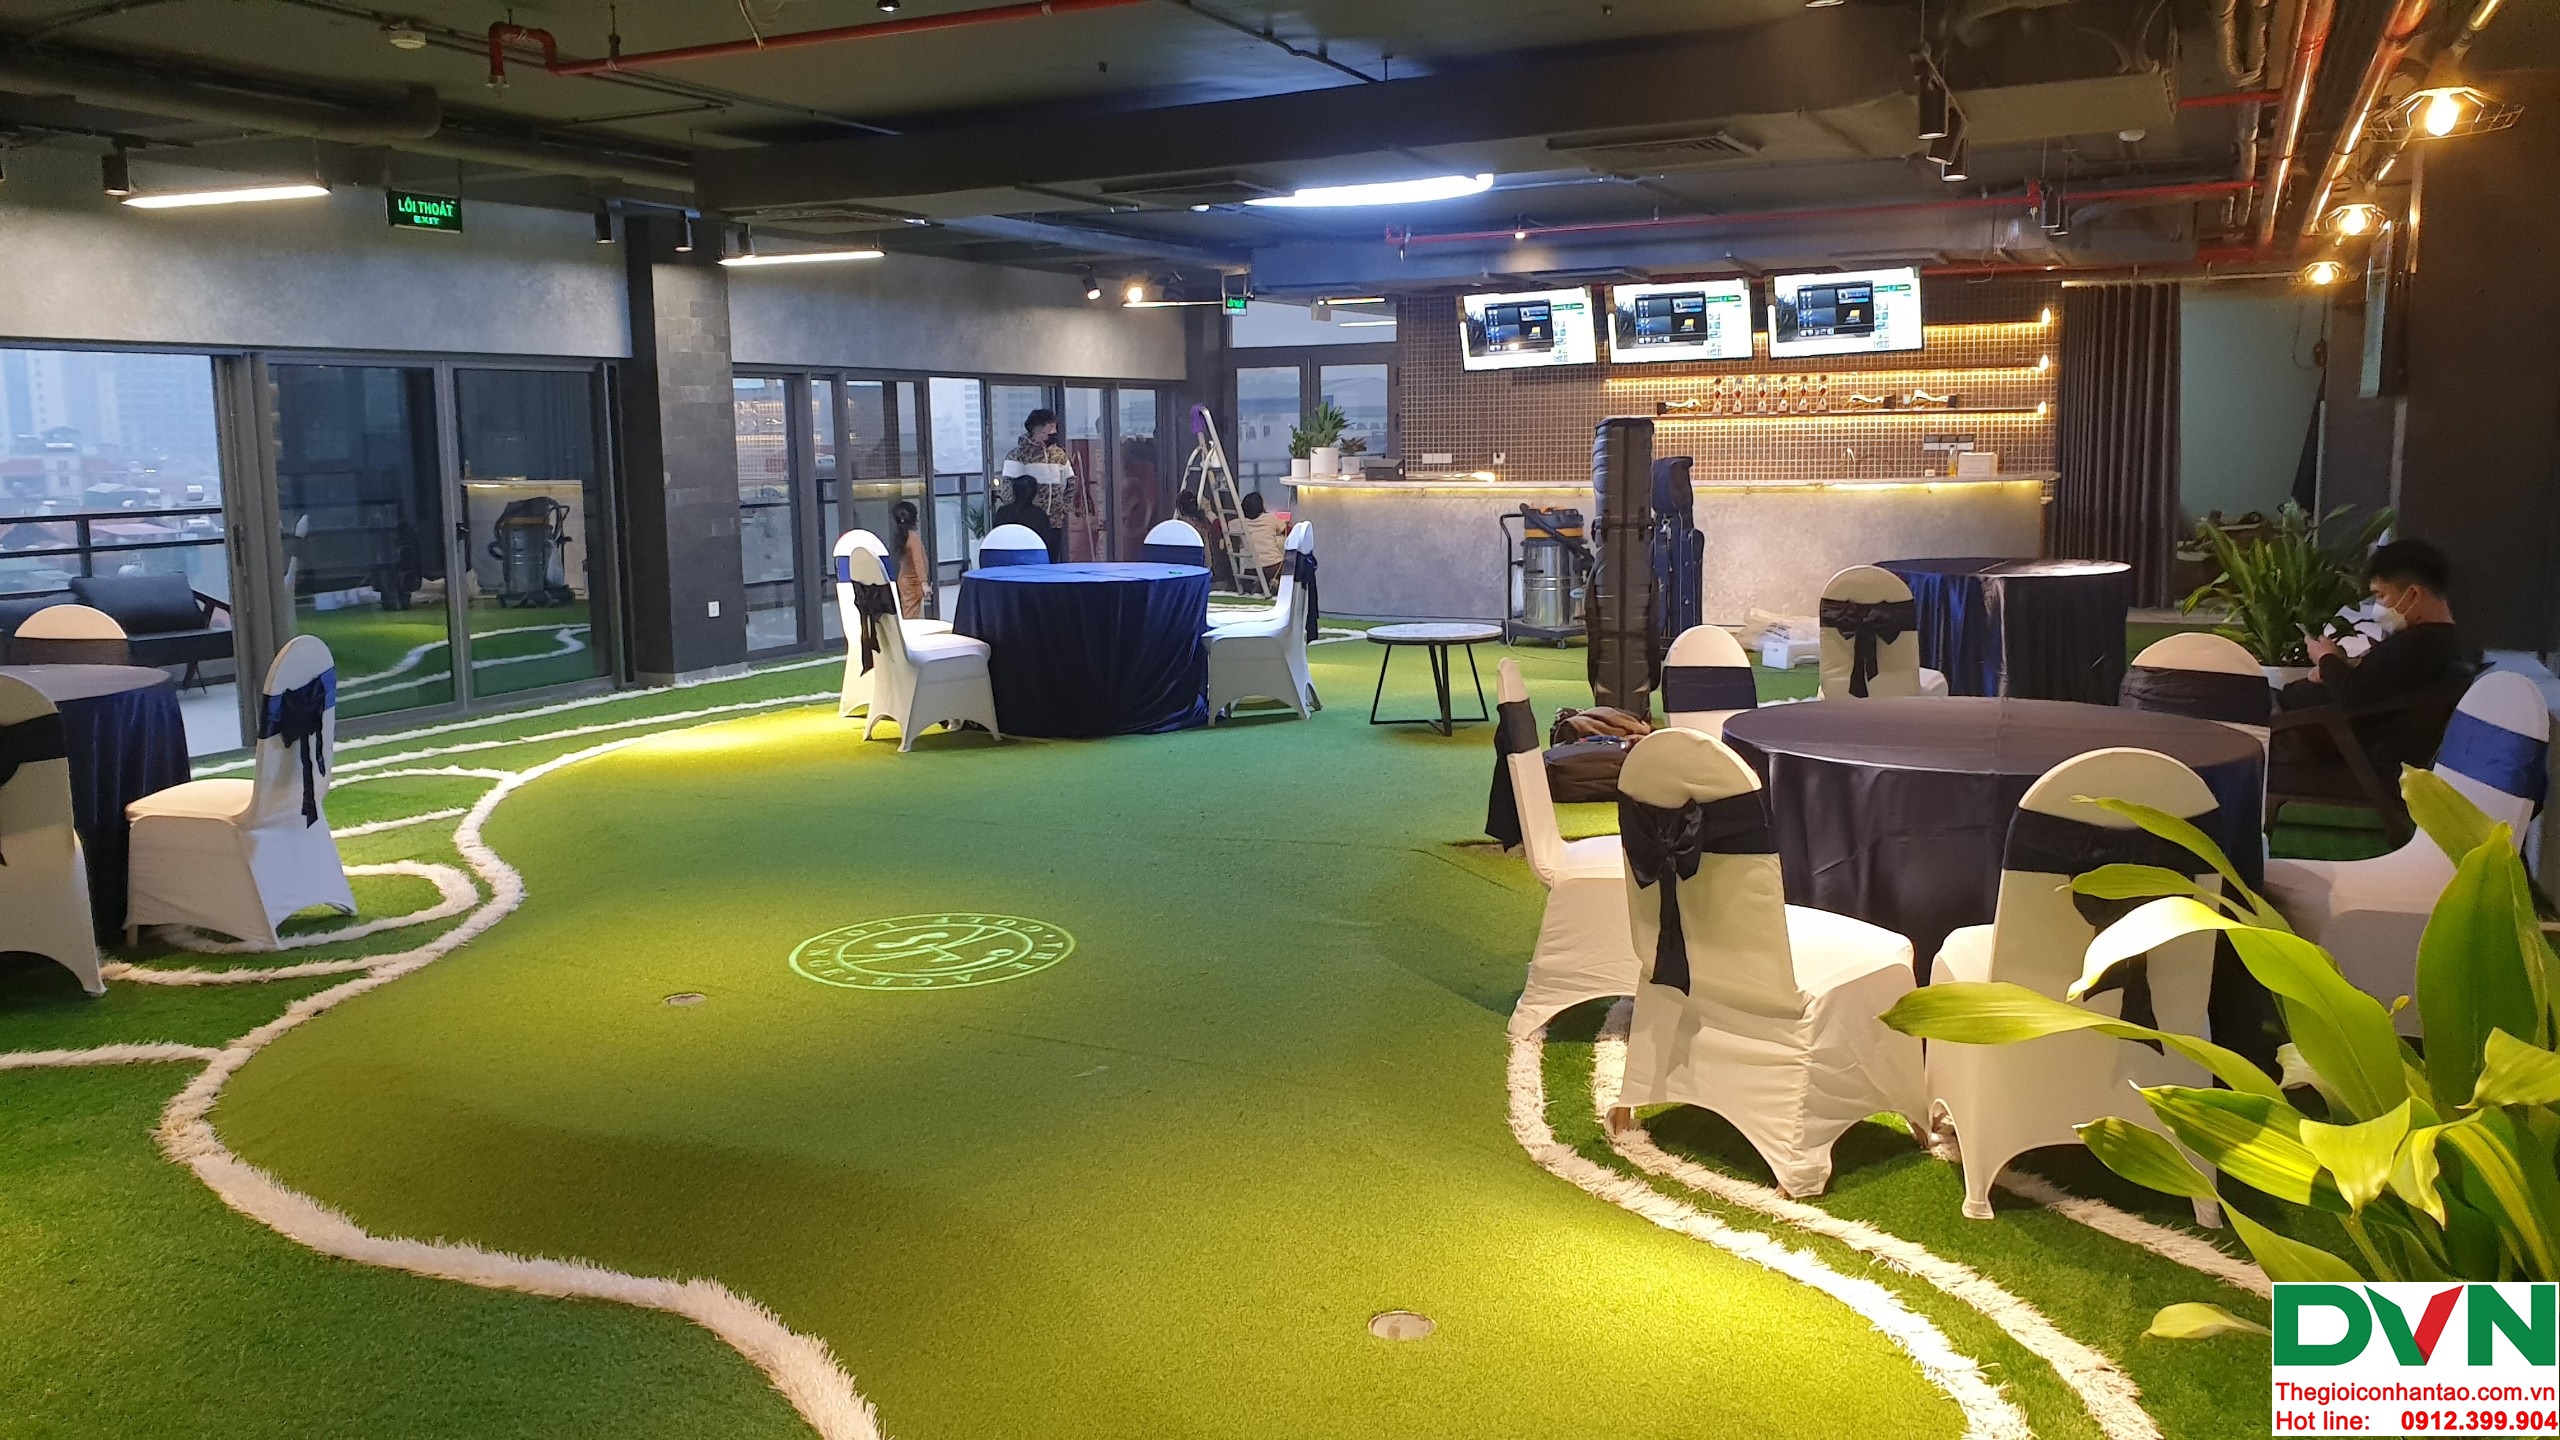 Dự án The ACE Golf Lounge - Thụy Khuê, quận Tây Hồ, Hà Nội 5